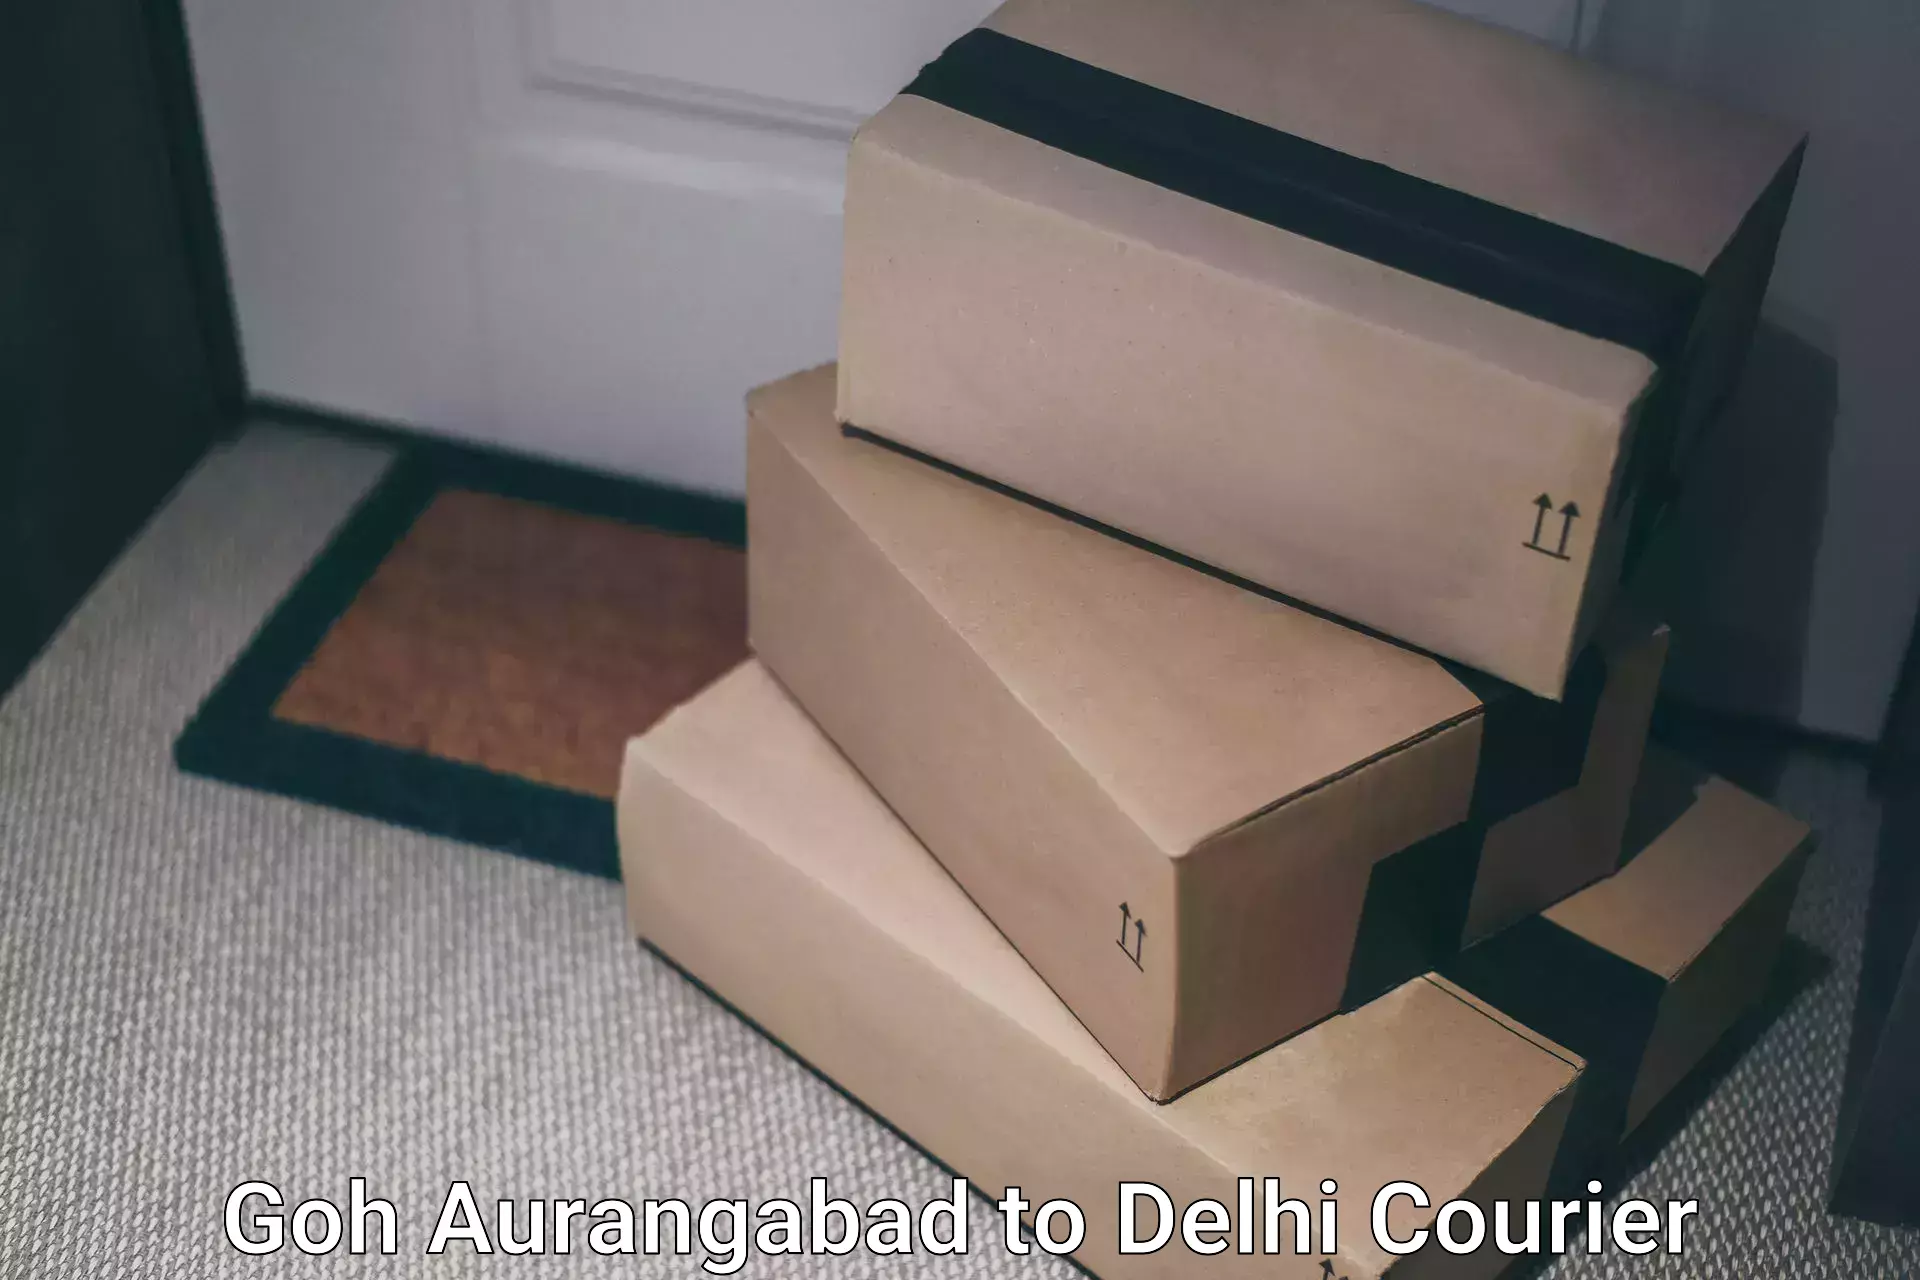 Digital courier platforms Goh Aurangabad to Sansad Marg